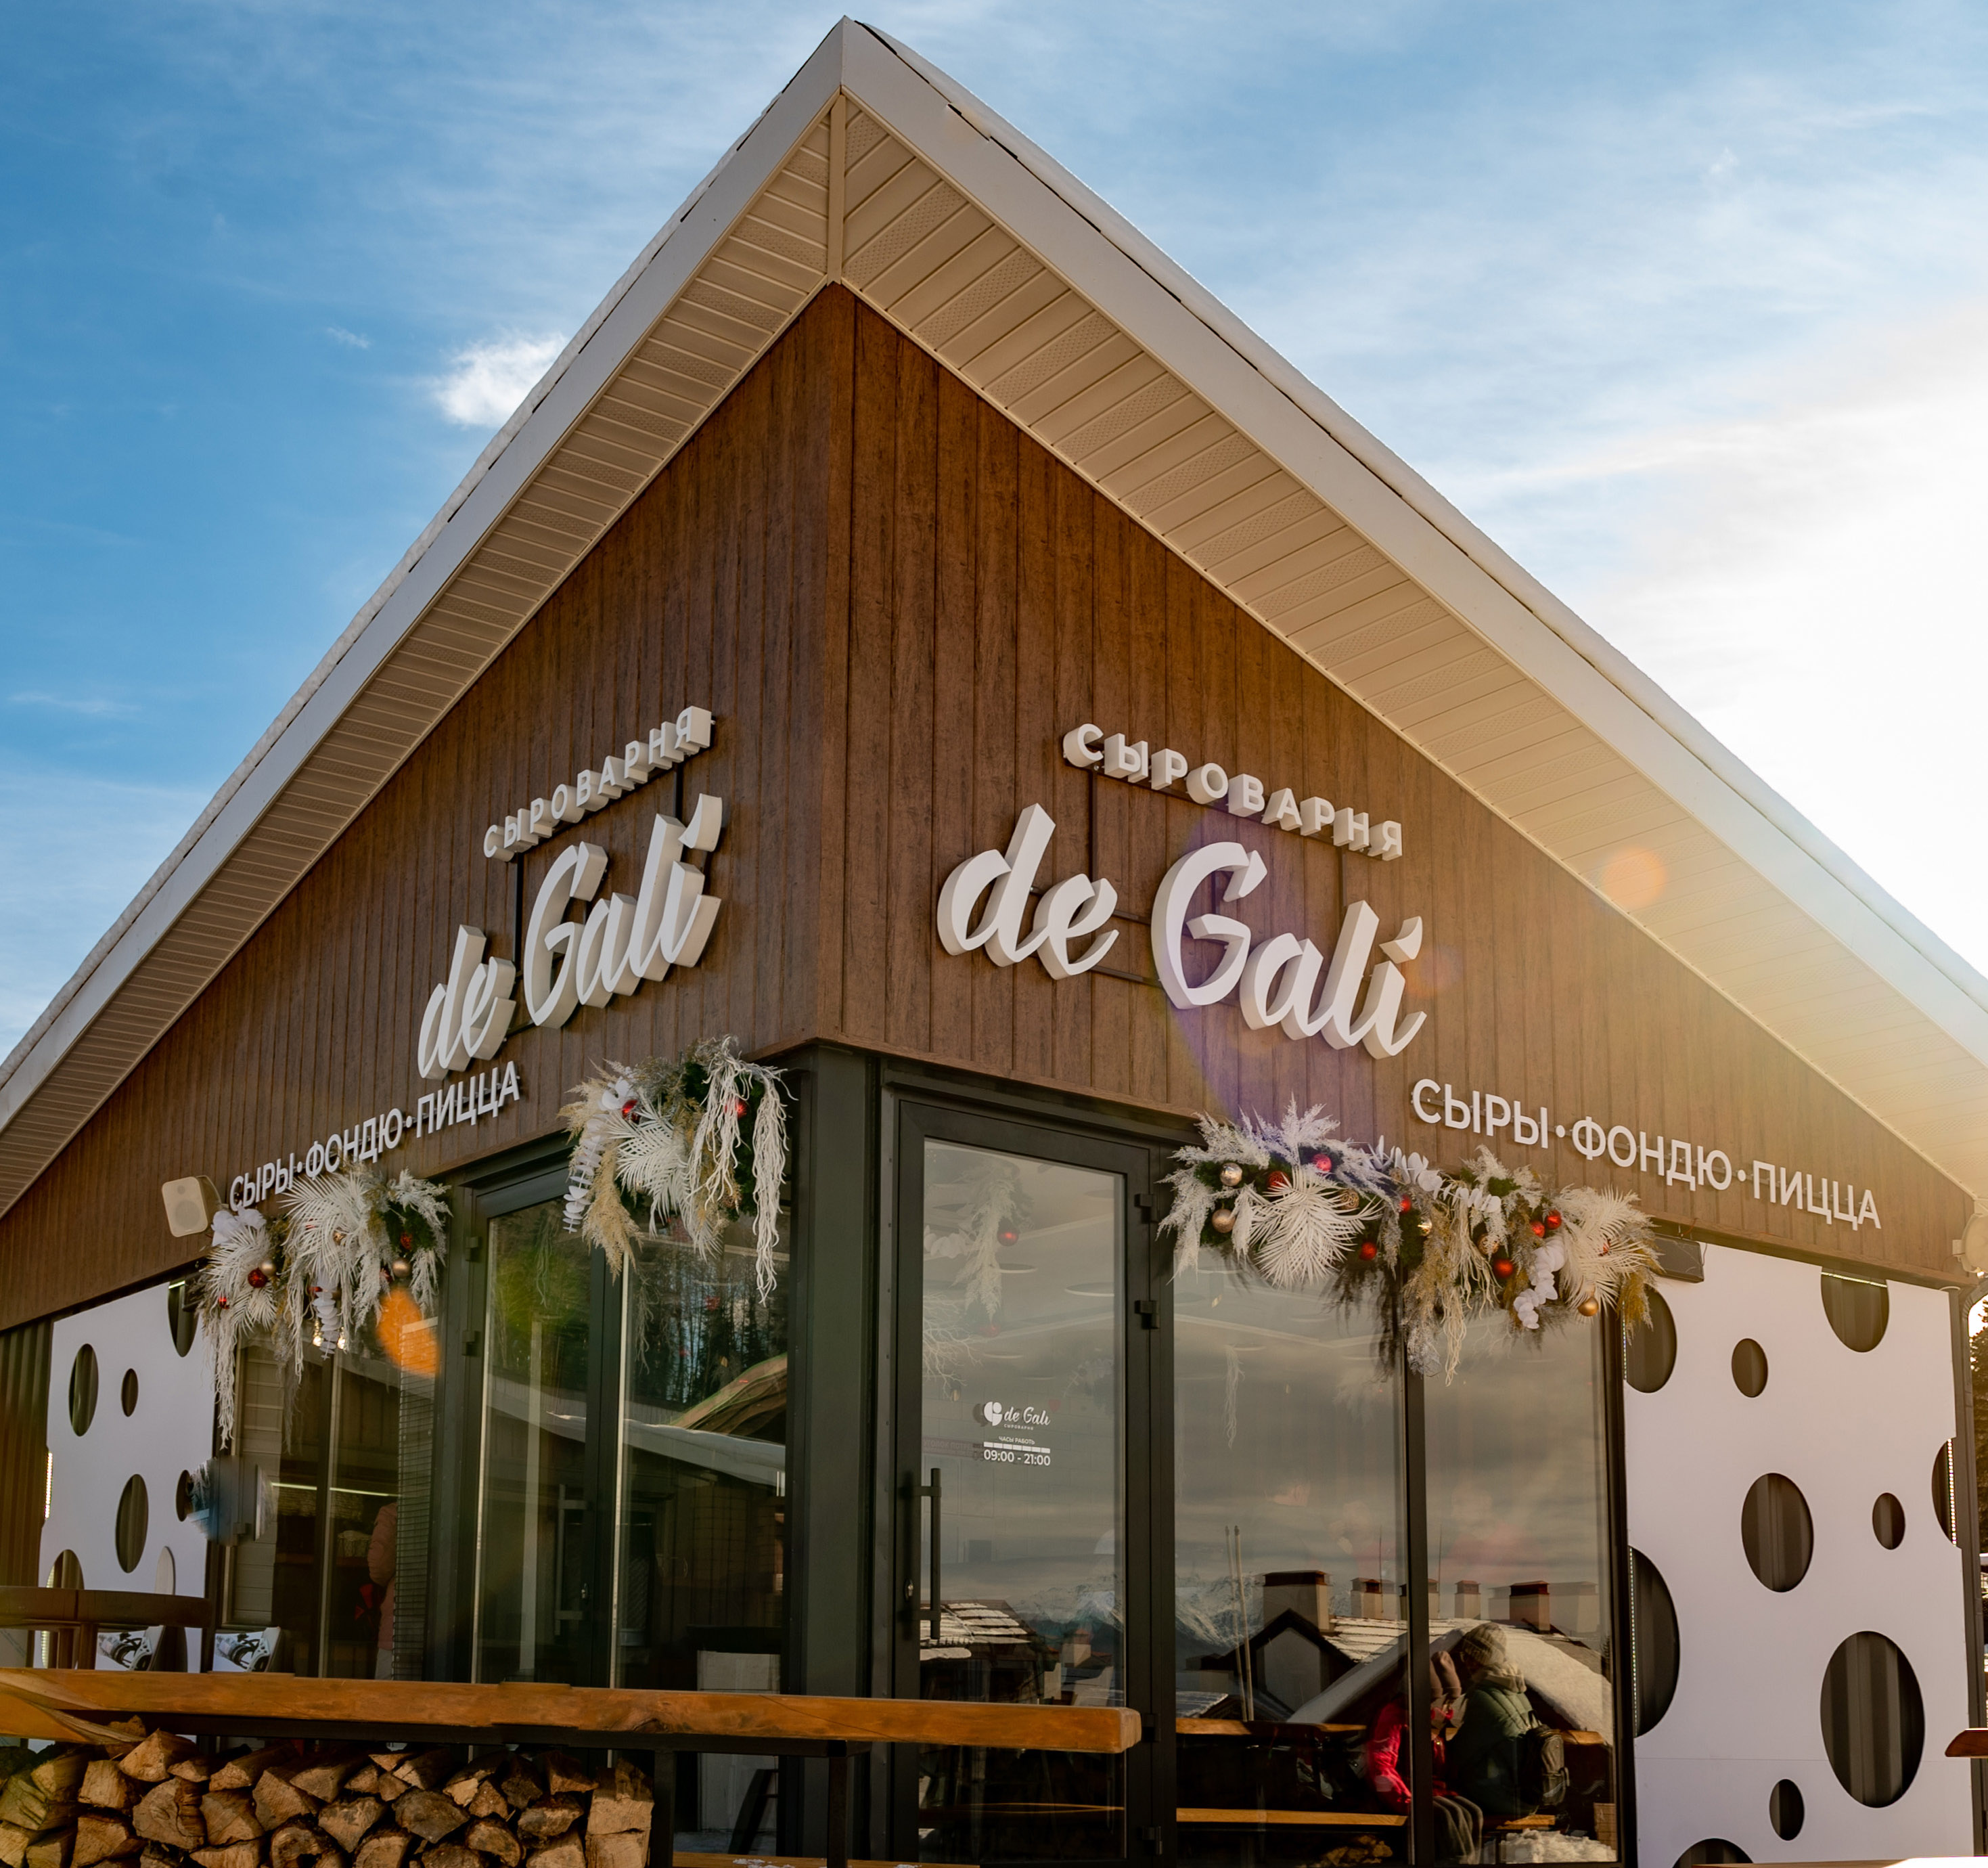 Новый ресторан-сыроварня de Gаli